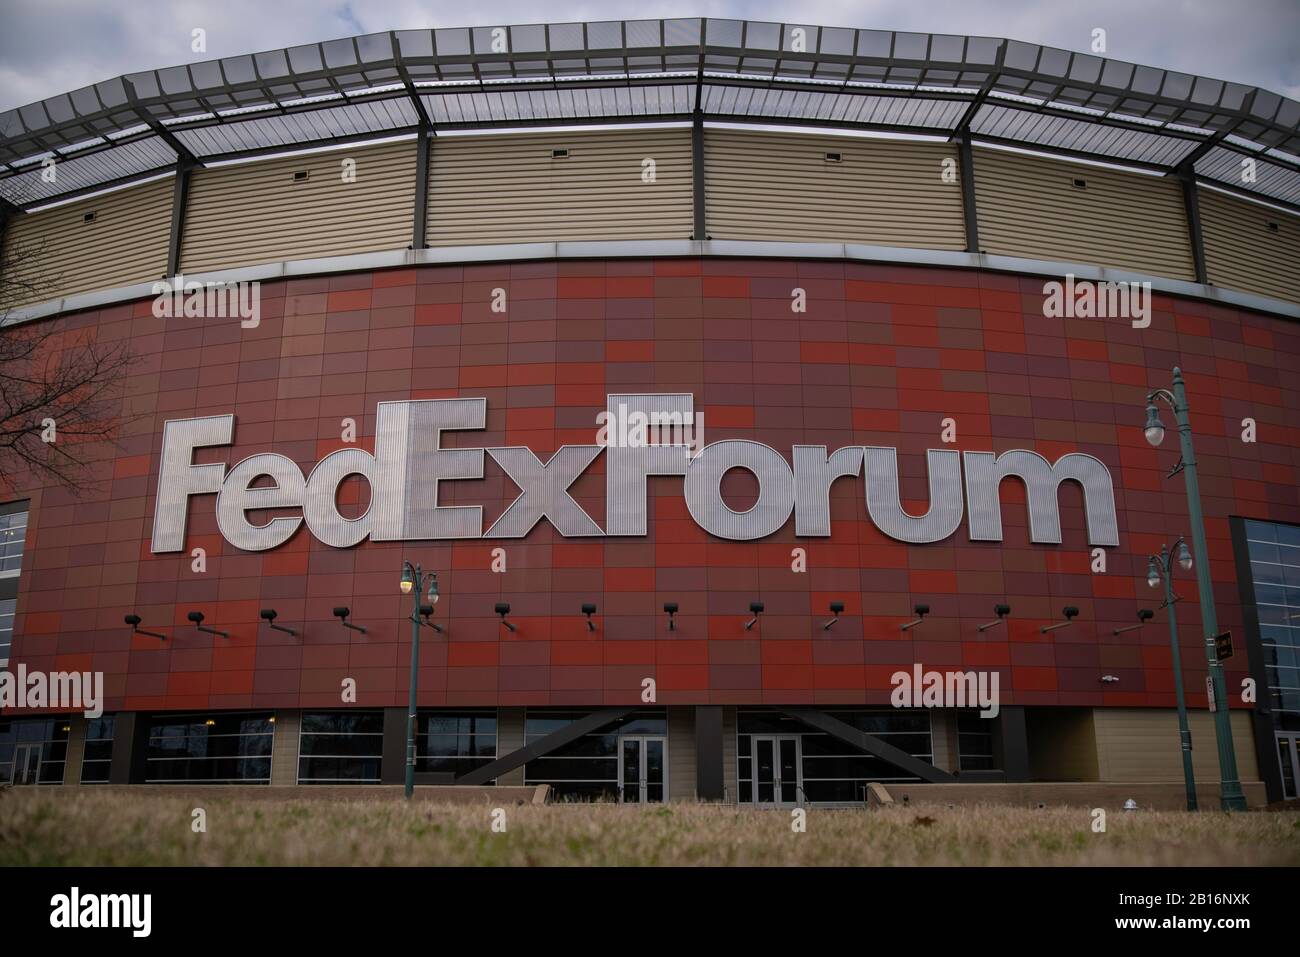 Memphis, Tennessee - 27 gennaio 2020: FedExForum Arena, sede dei NBA Grizzlies e della squadra di pallacanestro della U of M Tigers NCAA Foto Stock